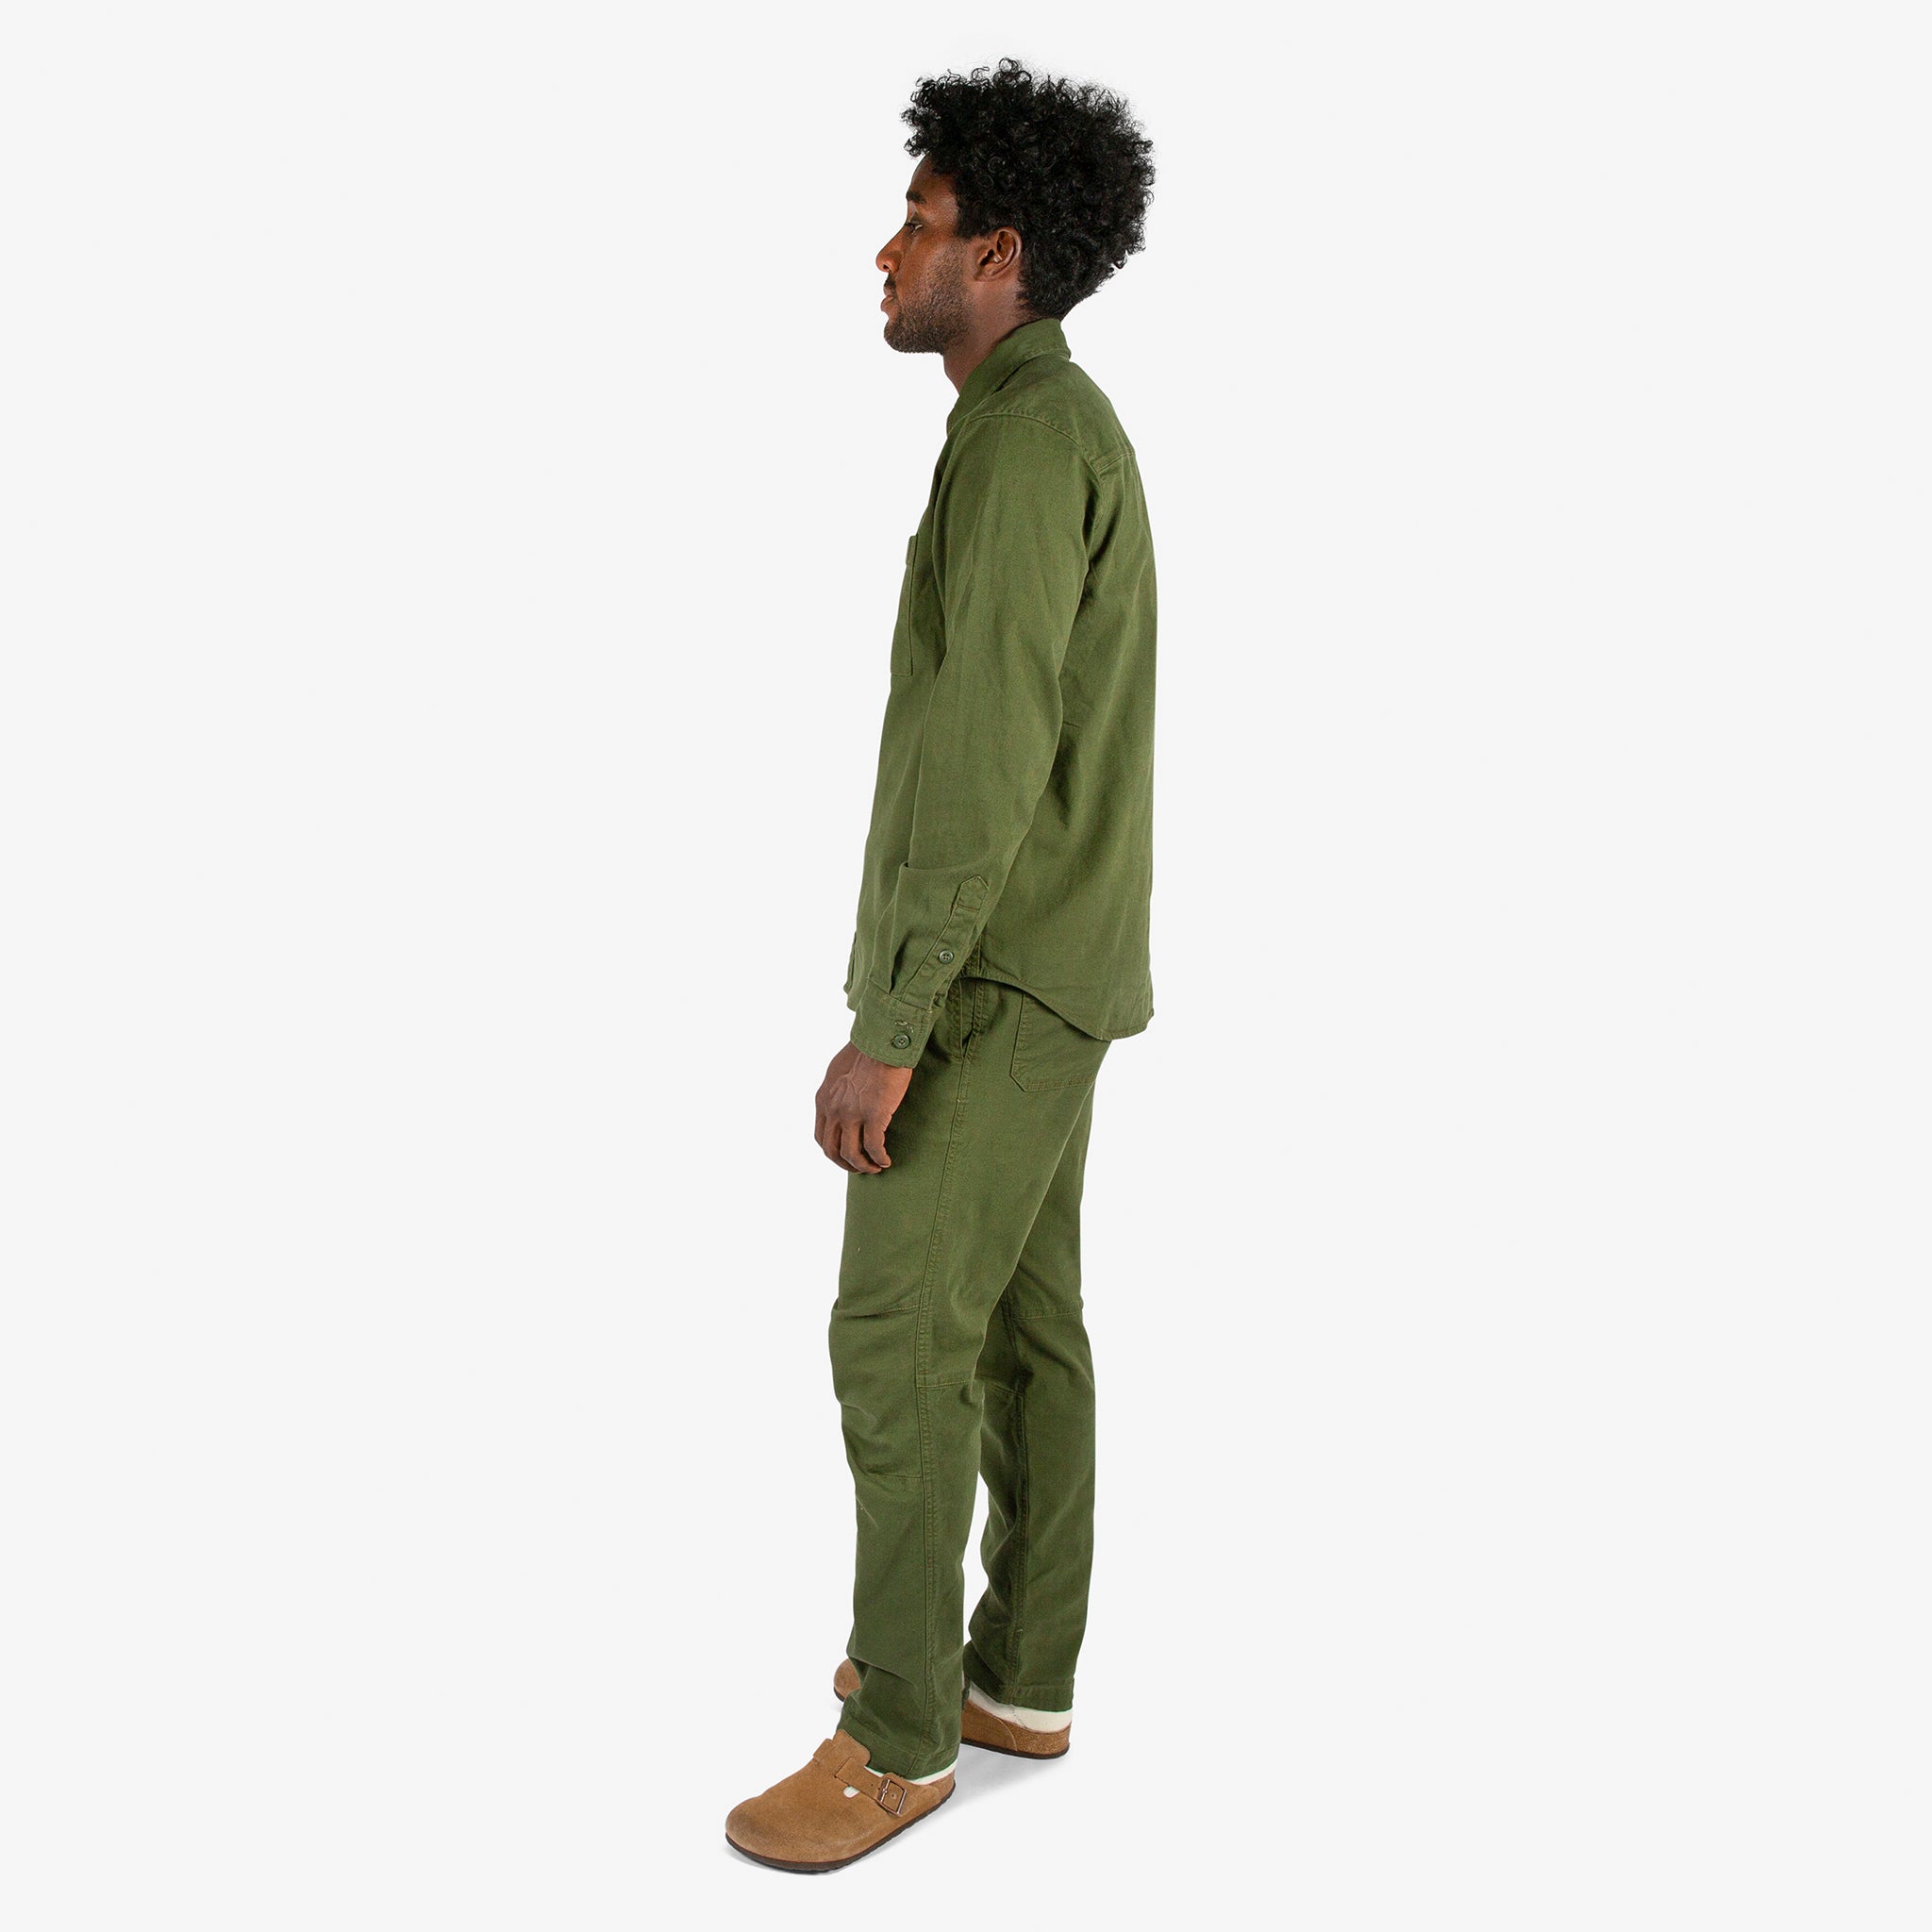 Full side model shot of Topo Designs Men's Dirt Shirt & Pants in "Olive" green.